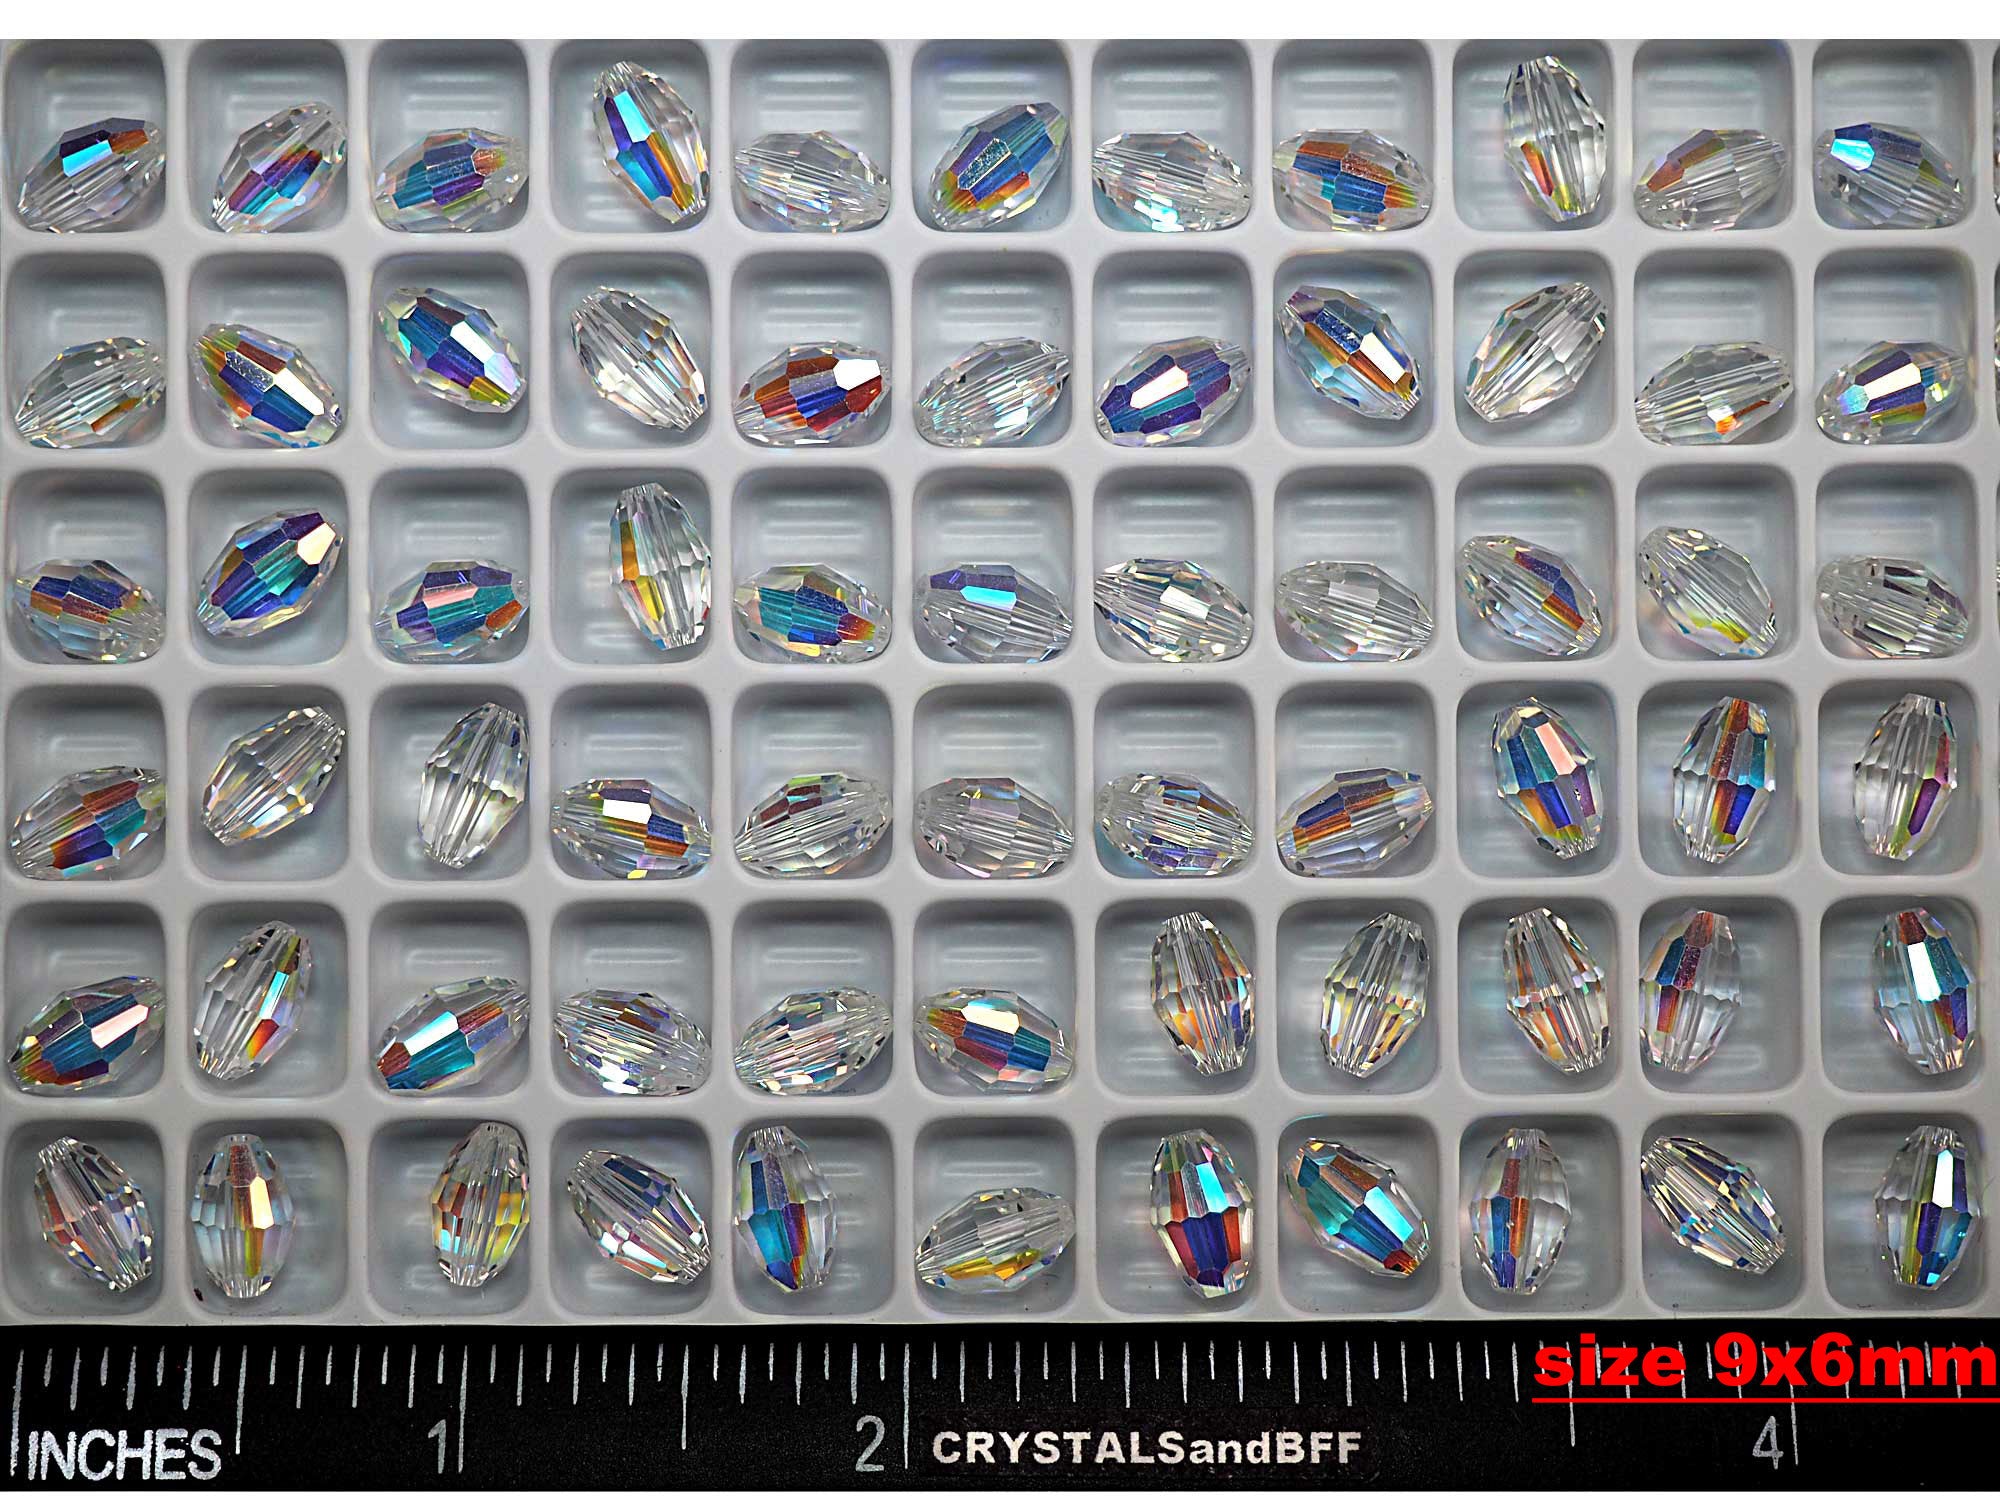 Crystal AB, Preciosa Czech Machine Cut Olive Crystal Beads, barrel shape in sizes 6x4mm, 7.5x5mm, 9x6mm, 10.5x7mm, 36 pieces (#5200 cut)